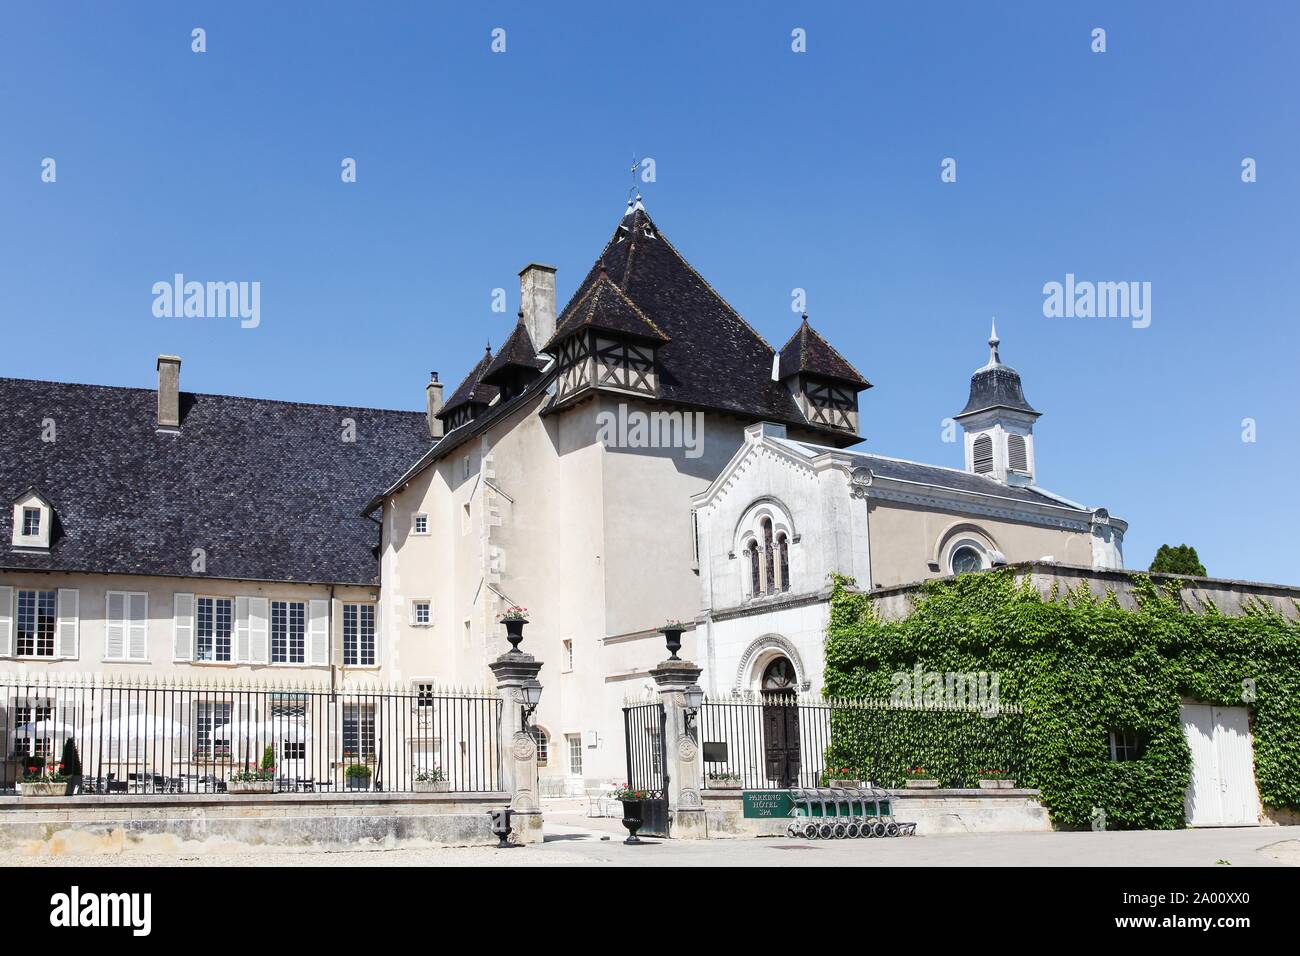 Pizay, France - May 22, 2015: Castle of Pizay  in Beaujolais, France. The Castle of Pizay, built in the XIXth century Stock Photo